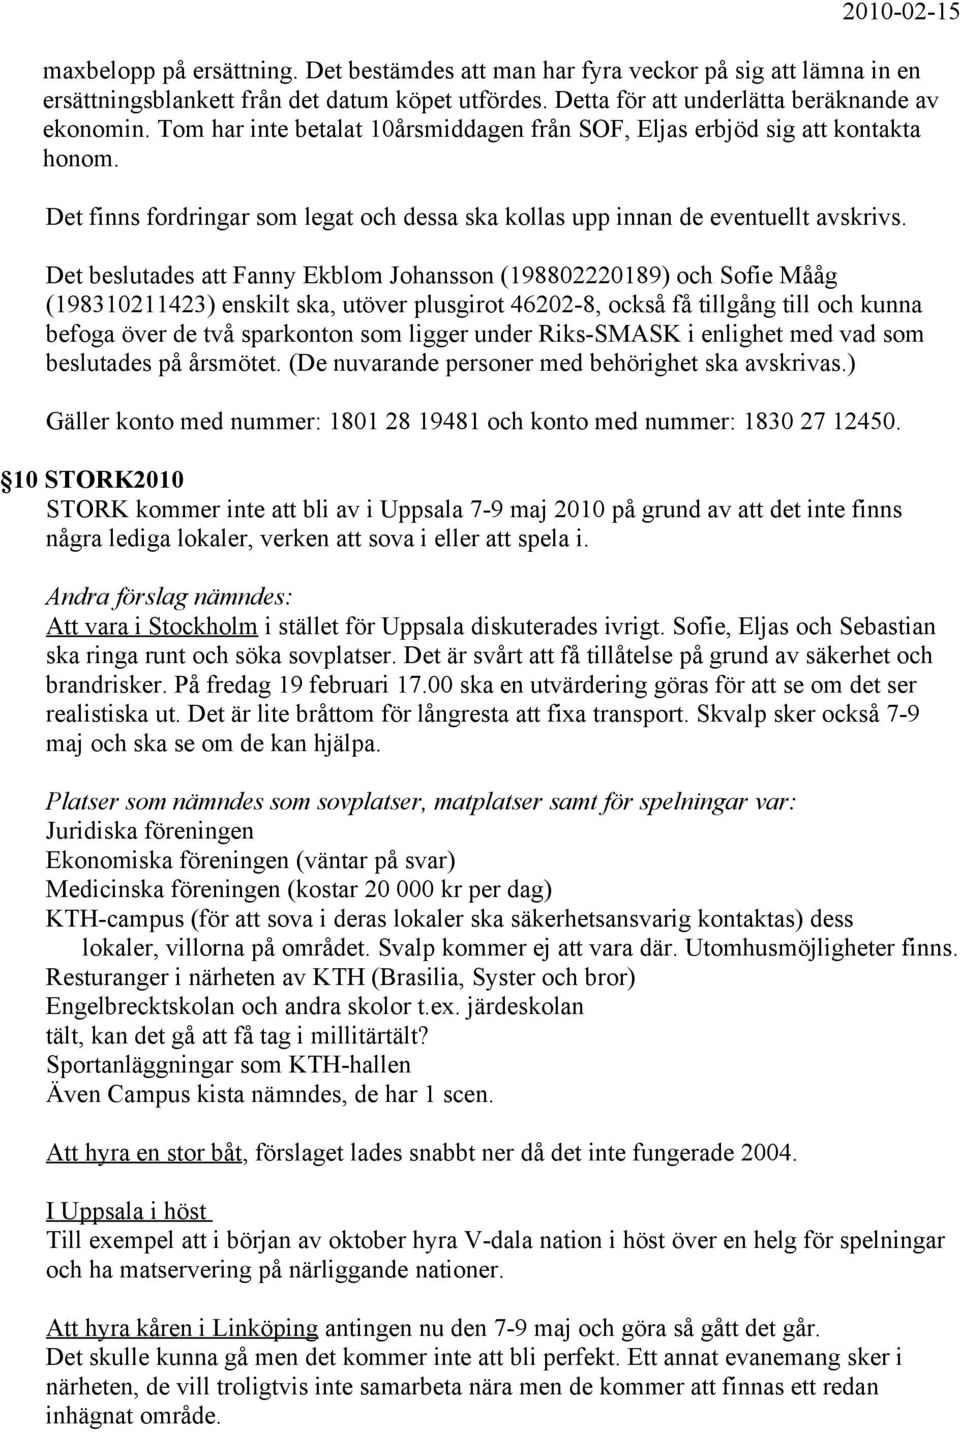 Det beslutades att Fanny Ekblom Johansson (198802220189) och Sofie Mååg (198310211423) enskilt ska, utöver plusgirot 46202-8, också få tillgång till och kunna befoga över de två sparkonton som ligger